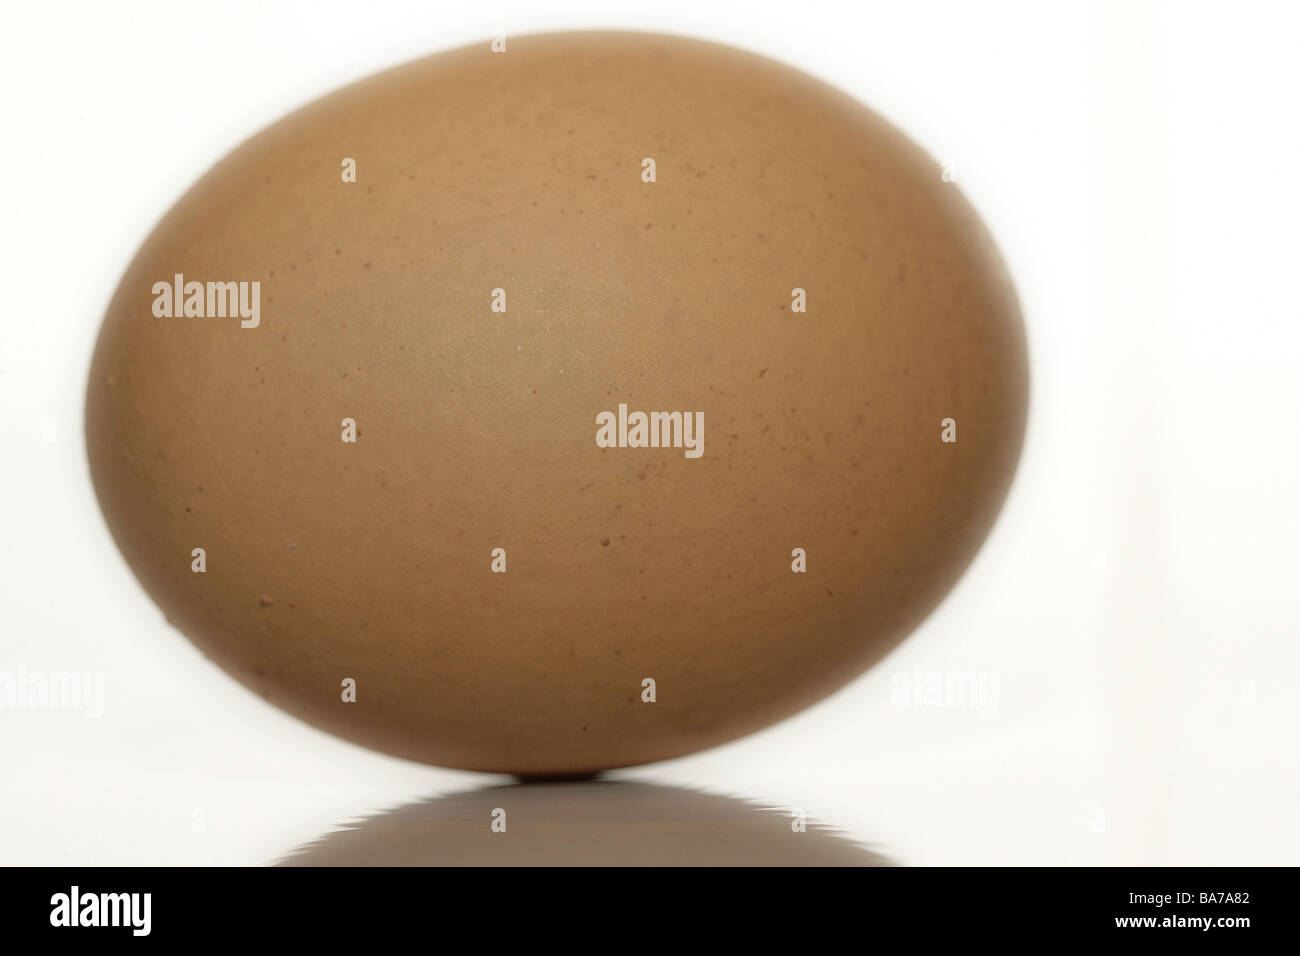 Hühnerei brown egg oval food symbol fragile fragile sensitively concept ...